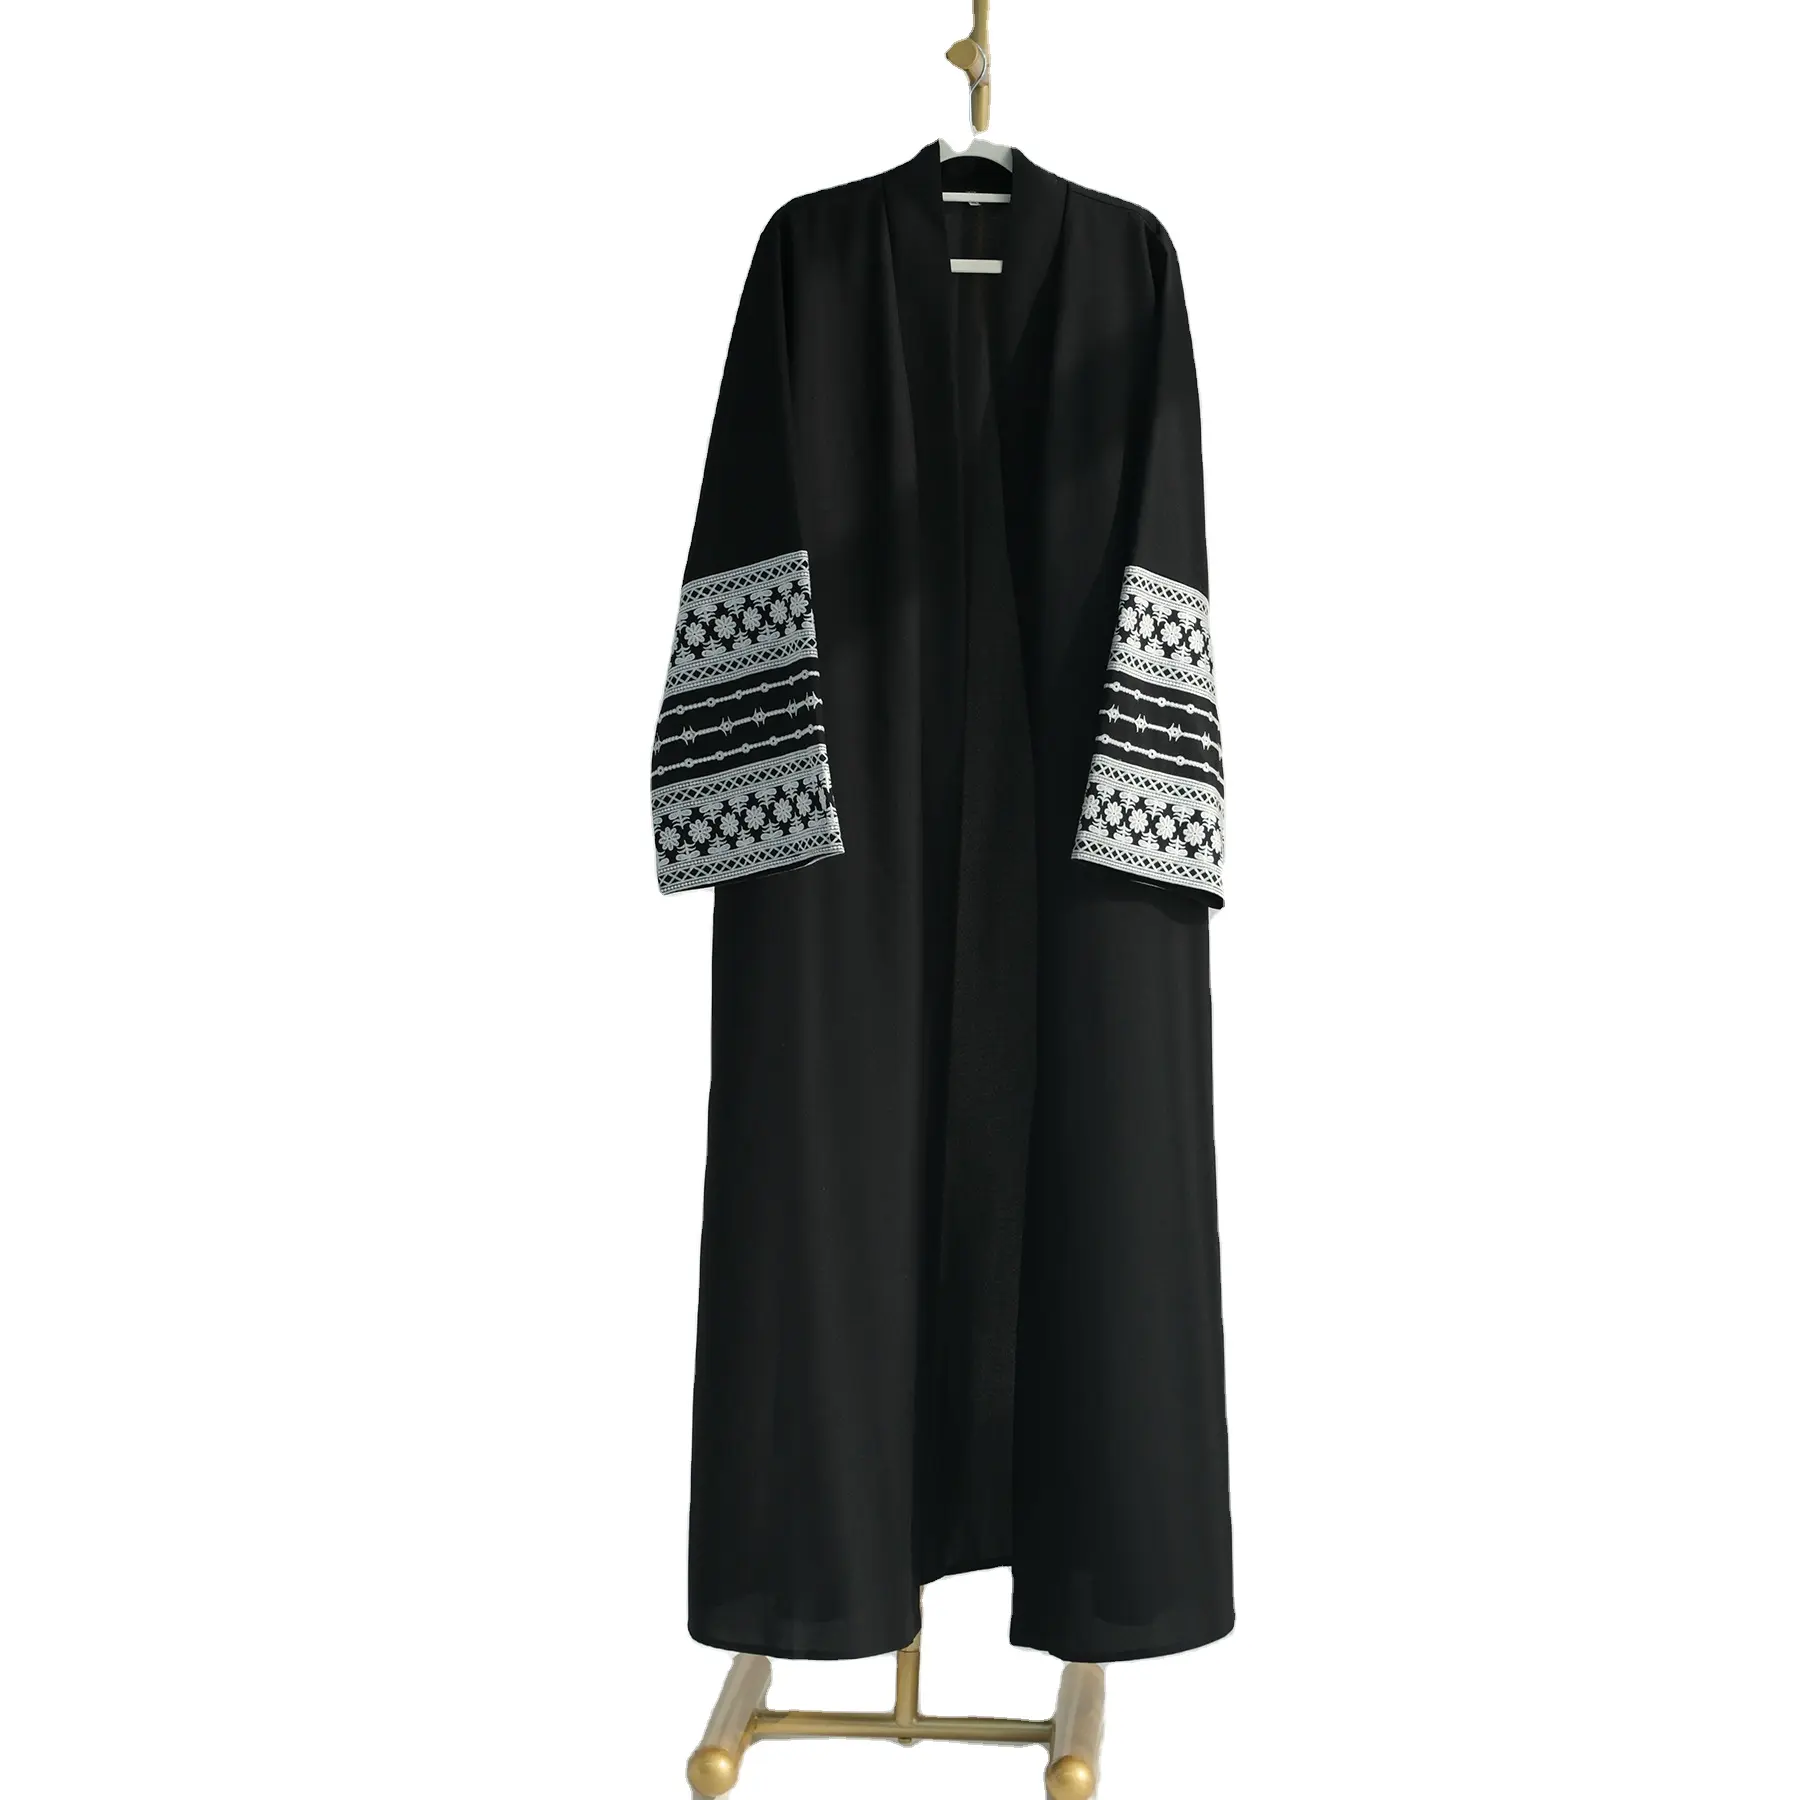 Oriente Medio bordado abierto Lino Abaya Kimono árabe Cardigan Kaftan ropa islámica moda musulmana vestidos abiertos nuevo